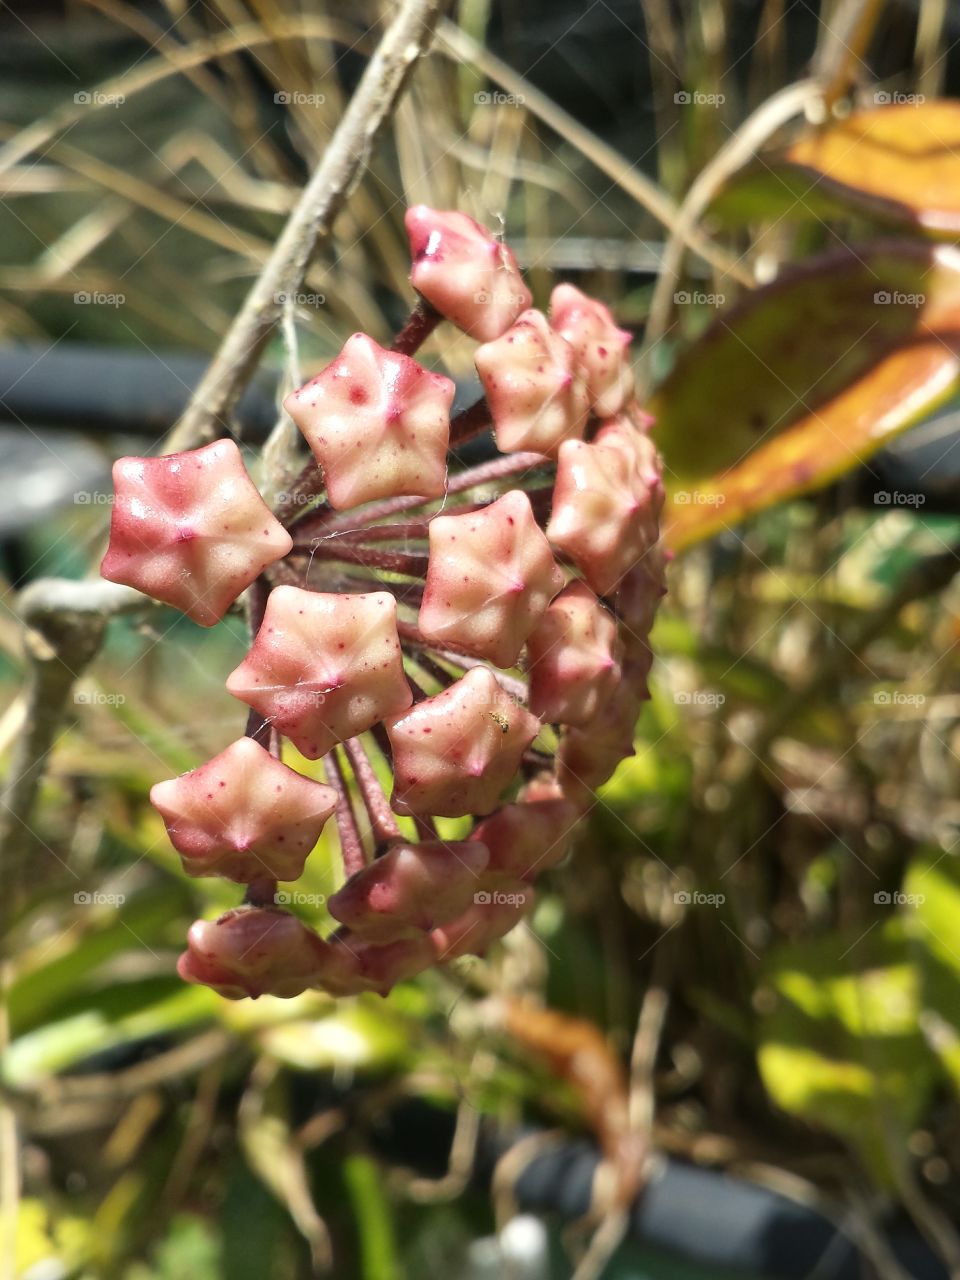 hoya flower pods